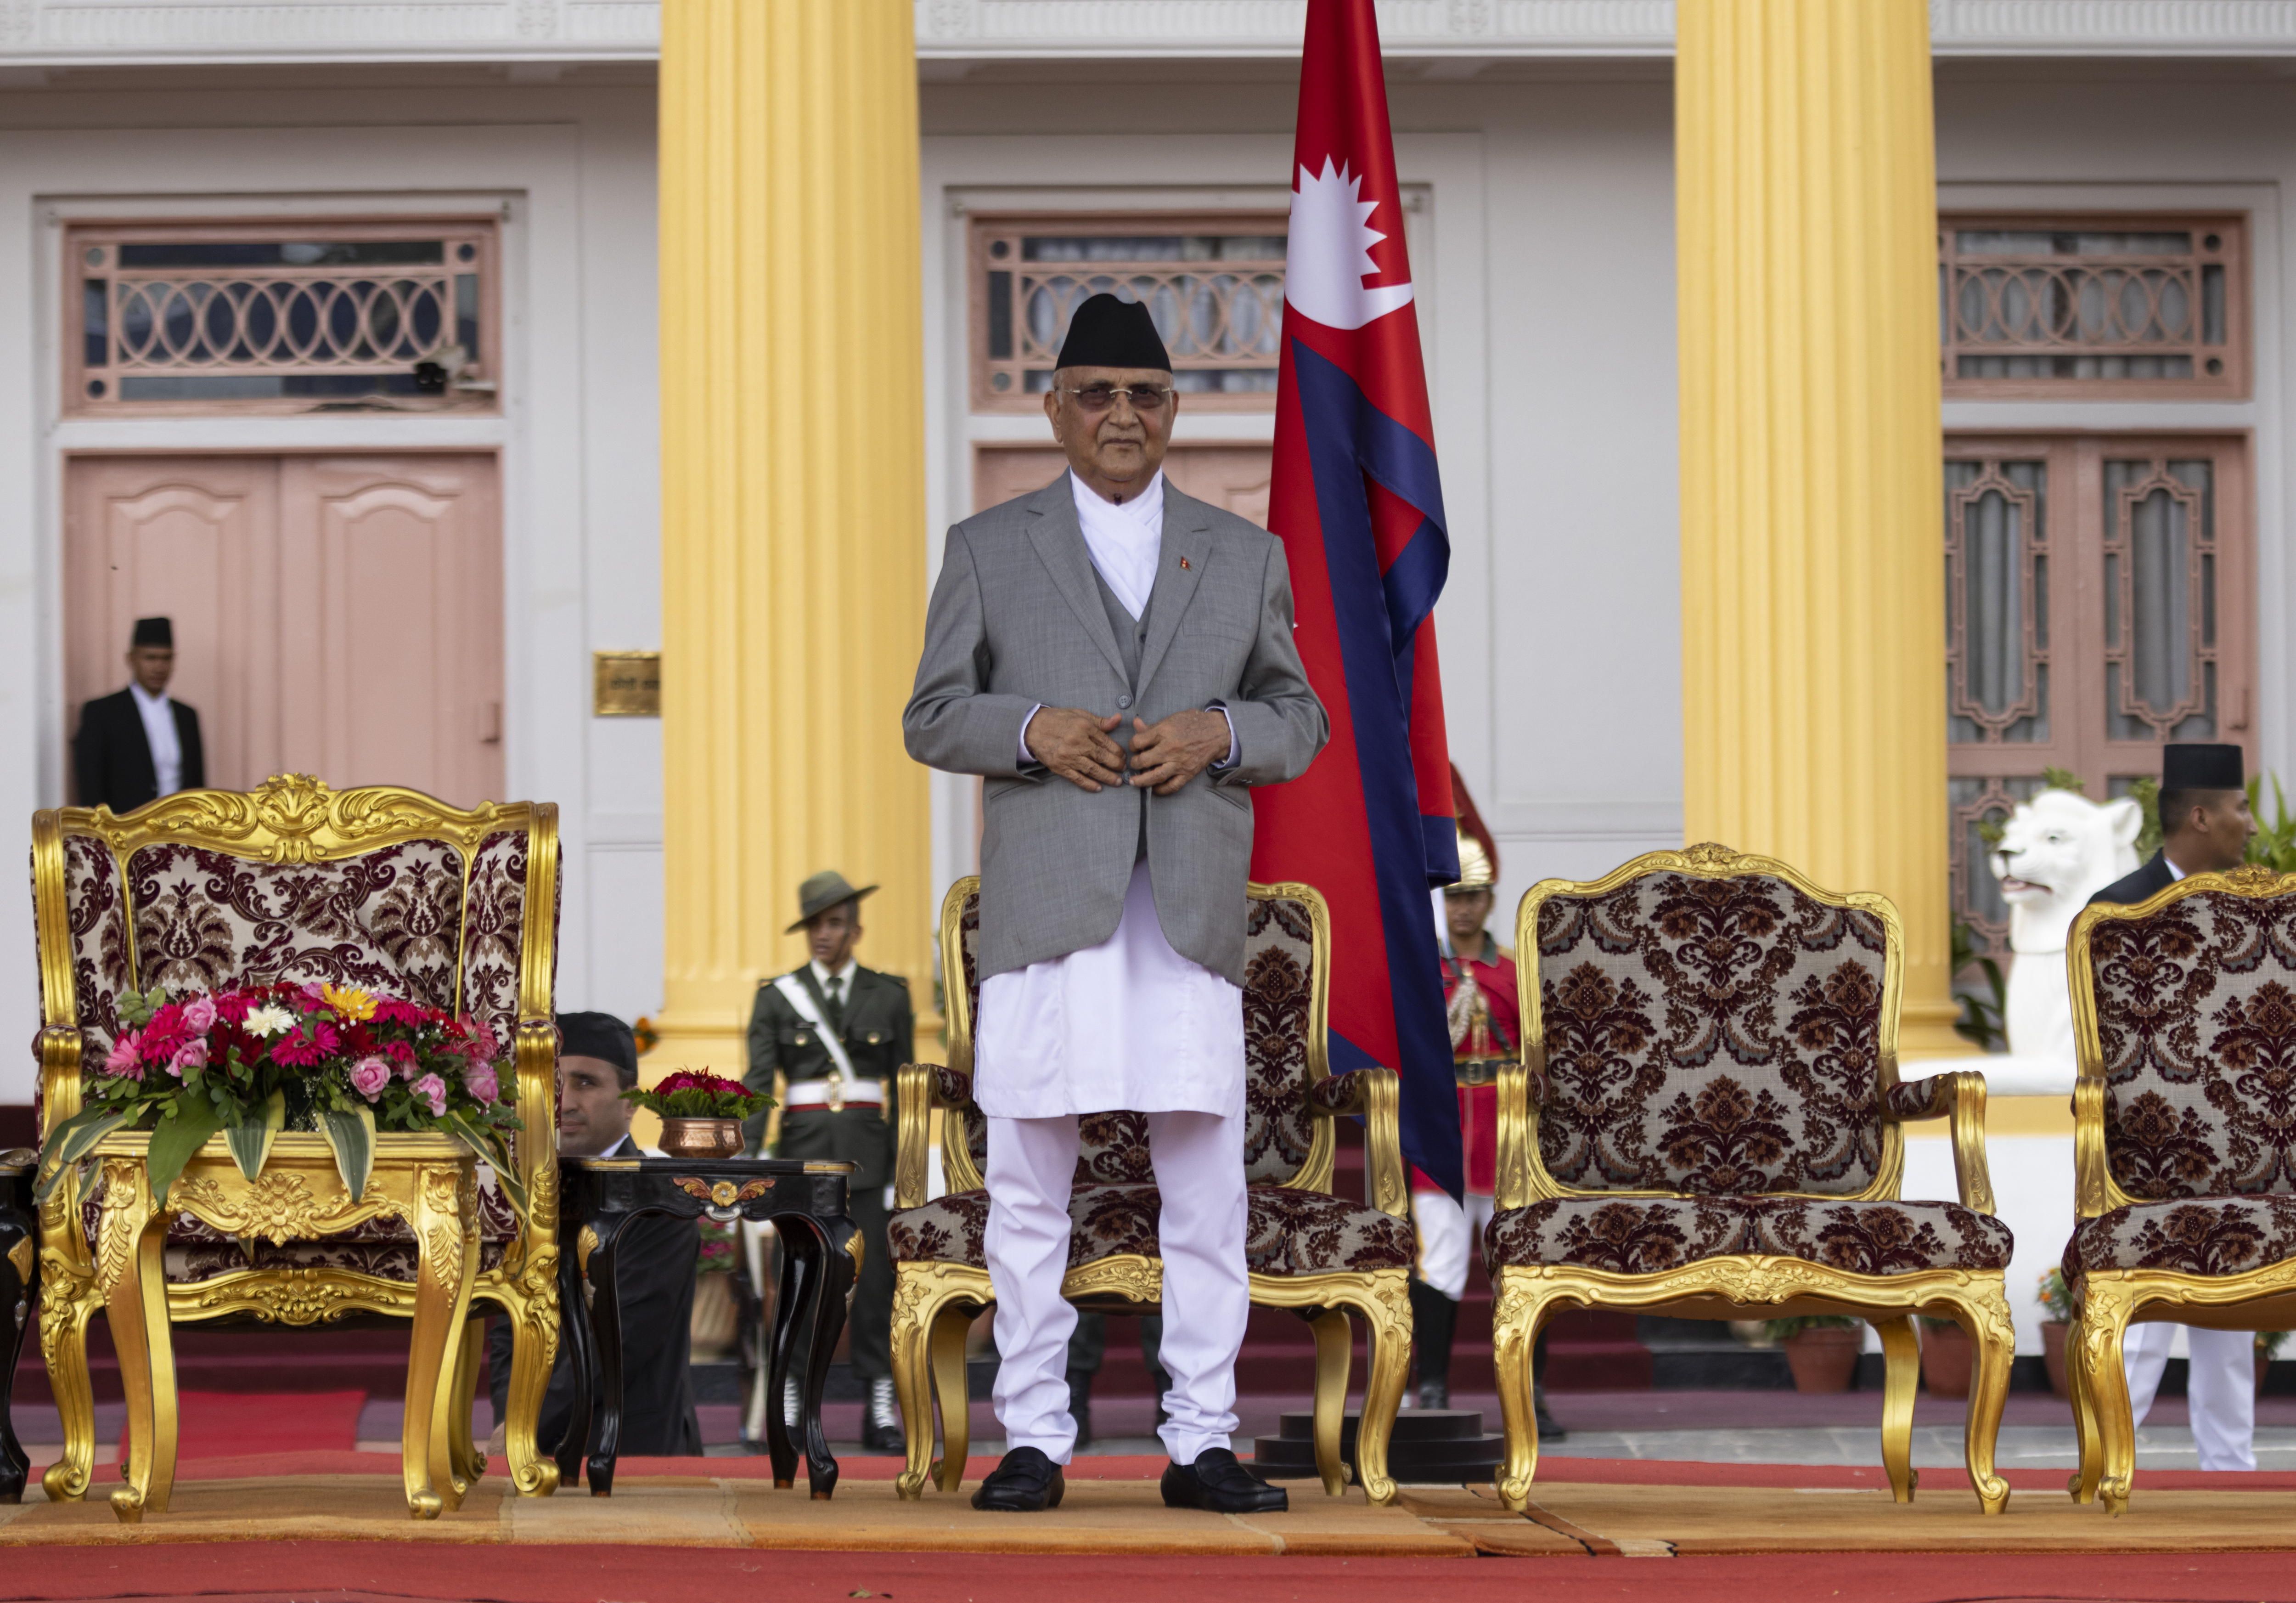 Sharma Oli Nepalgo lehen ministroa kargua hartzean, gaur goizean. NARENDRA SHRESTHA / EFE